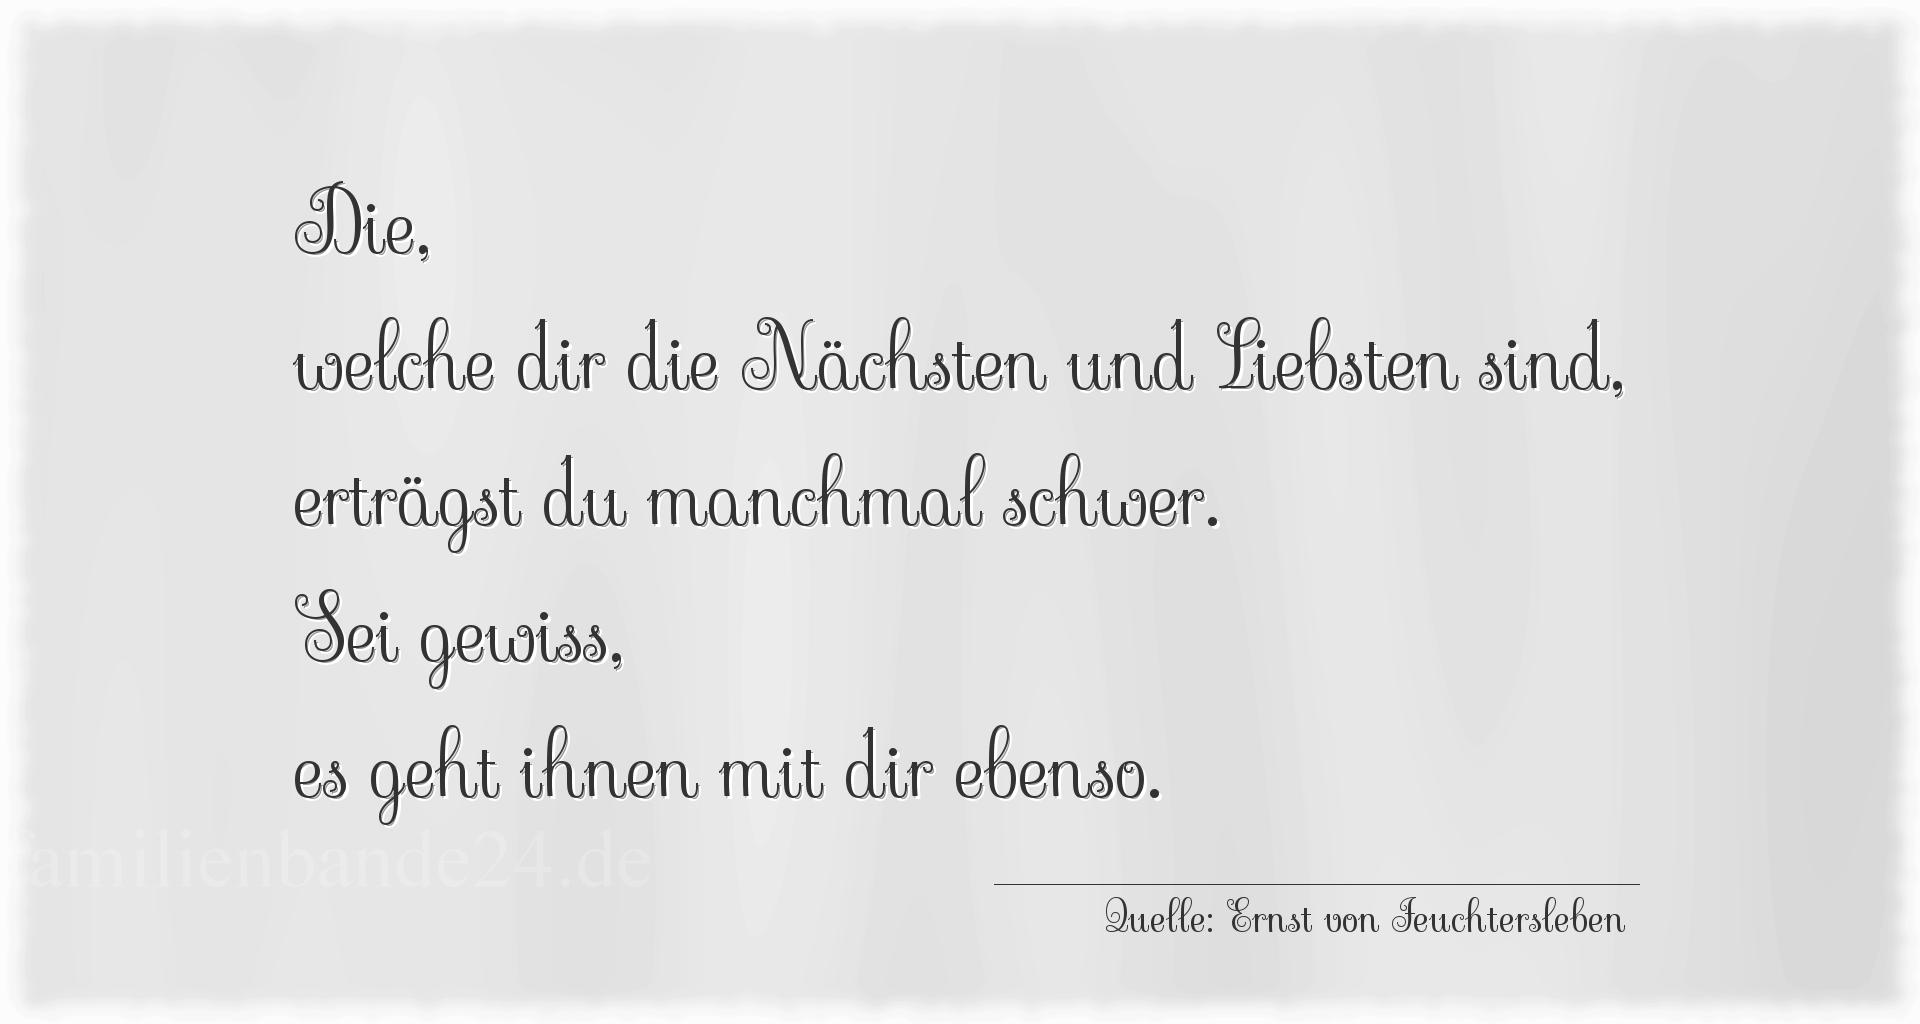 Familienspruch Nr. 362, Quelle Ernst von Feuchtersleben